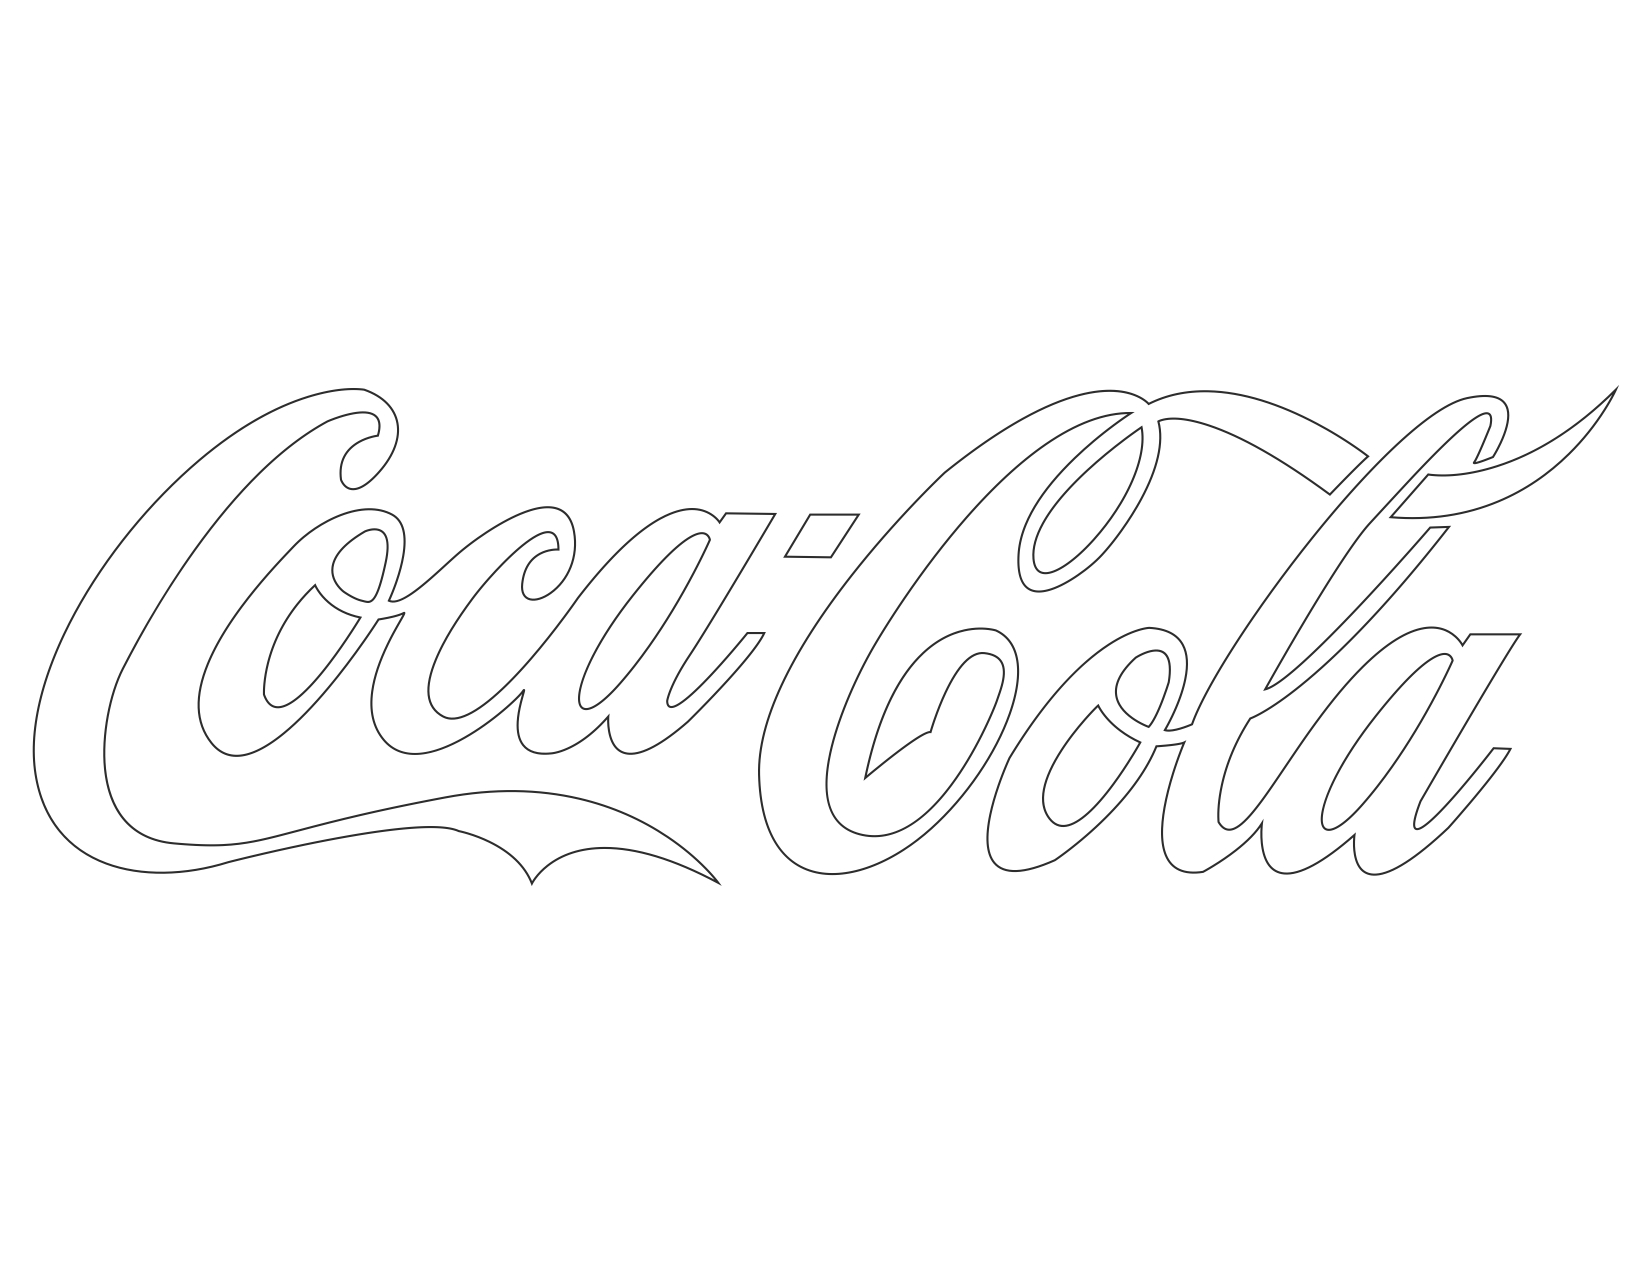 Coca Cola Stencil Free Printable